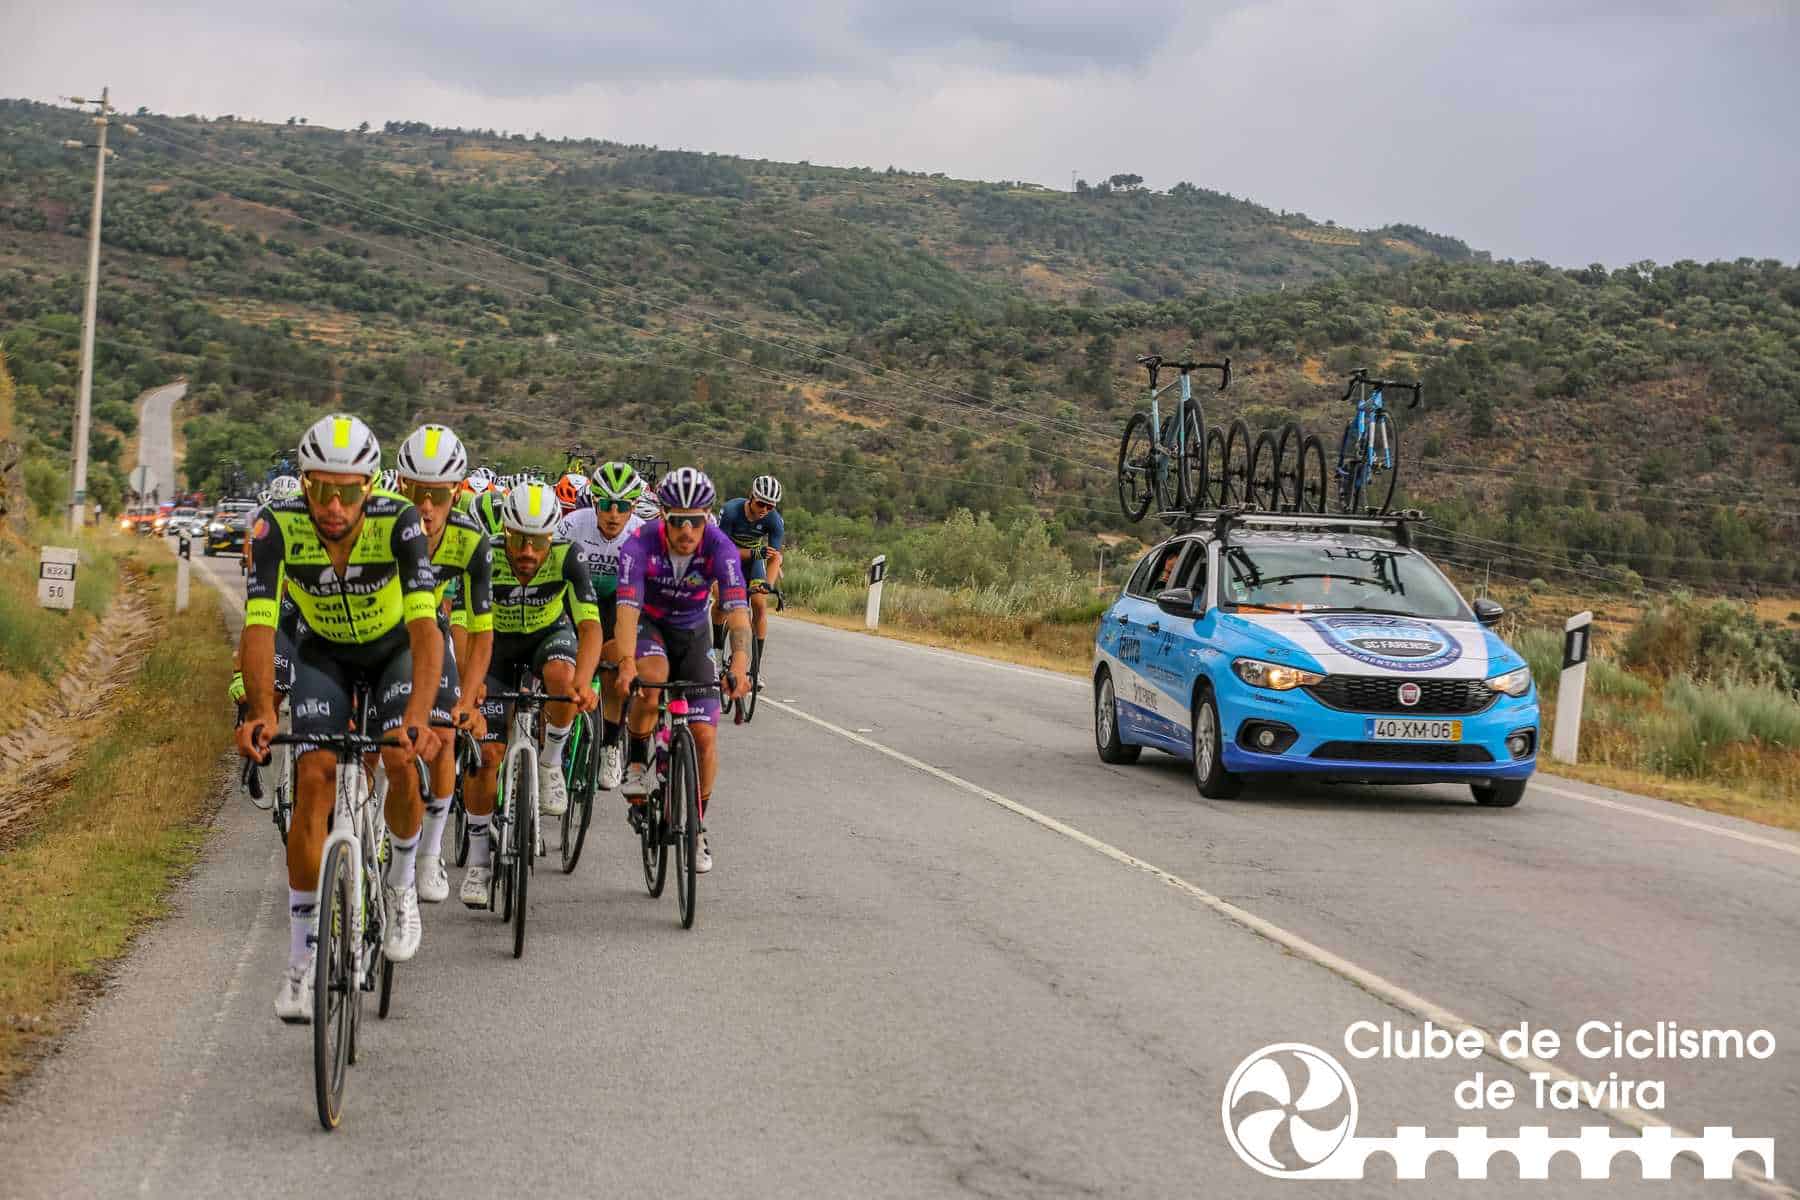 Clube de Ciclismo de Tavira - Grande Prémio Internacional Beiras e Serra da Estrela 202366